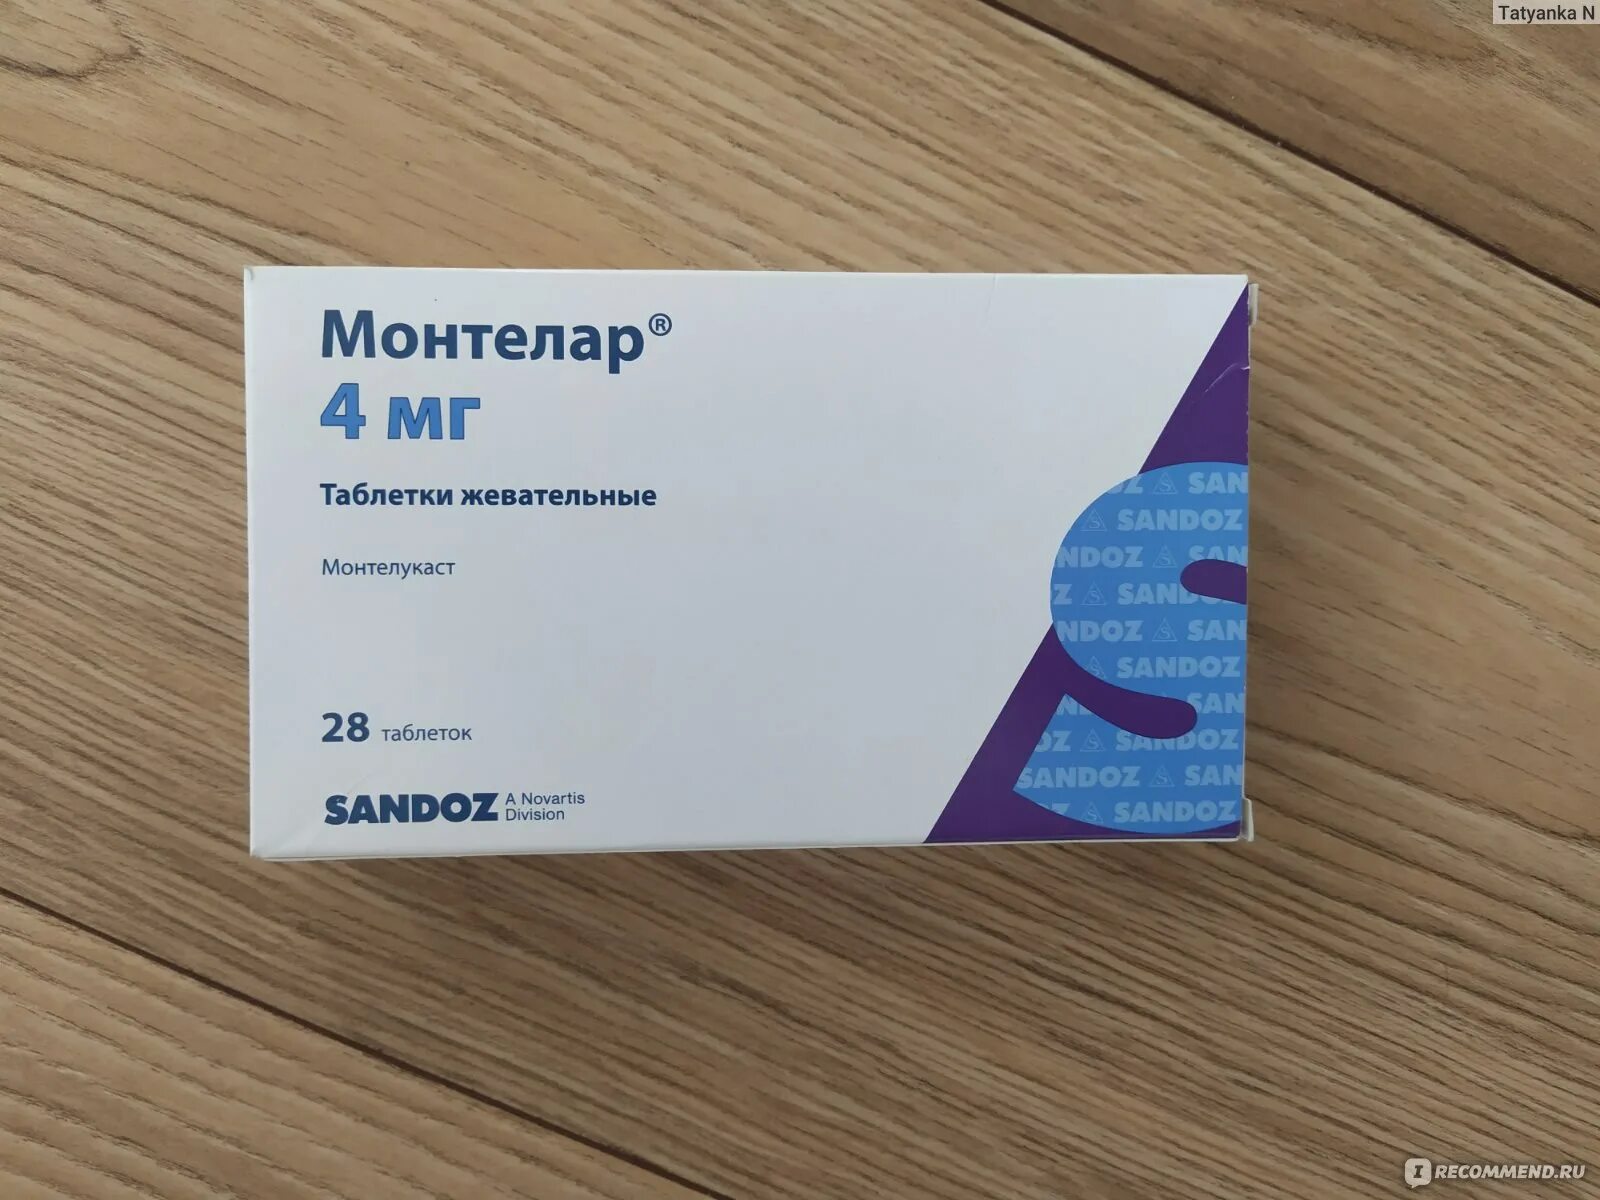 Монтелар Сандоз. Монтелар жевательные таблетки 4 мг. Монтелукаст монтелар. Сингуляр монтелар.